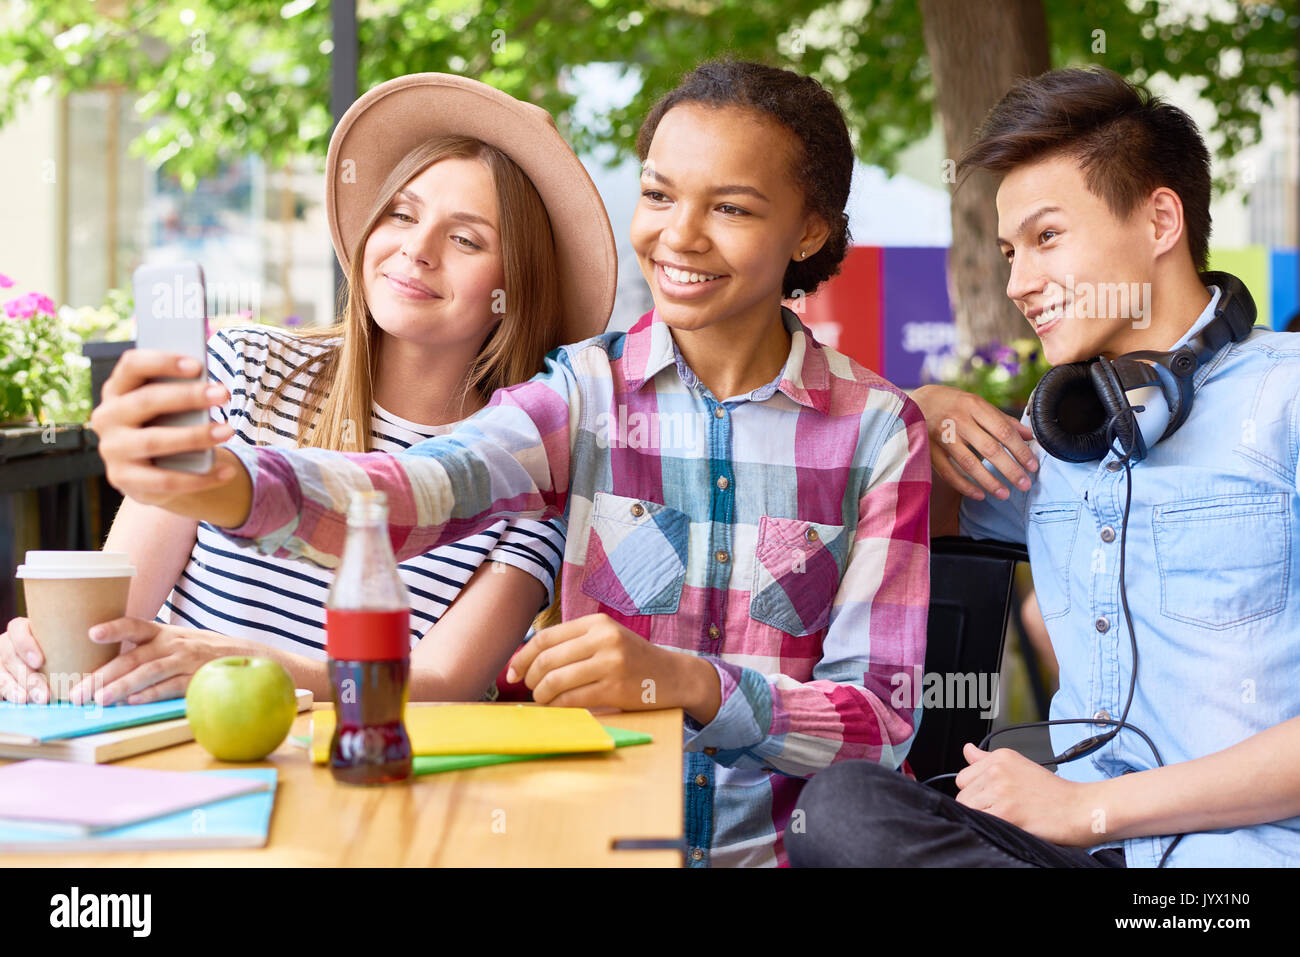 Fröhliche junge Menschen unter Selfie im Cafe Stockfoto